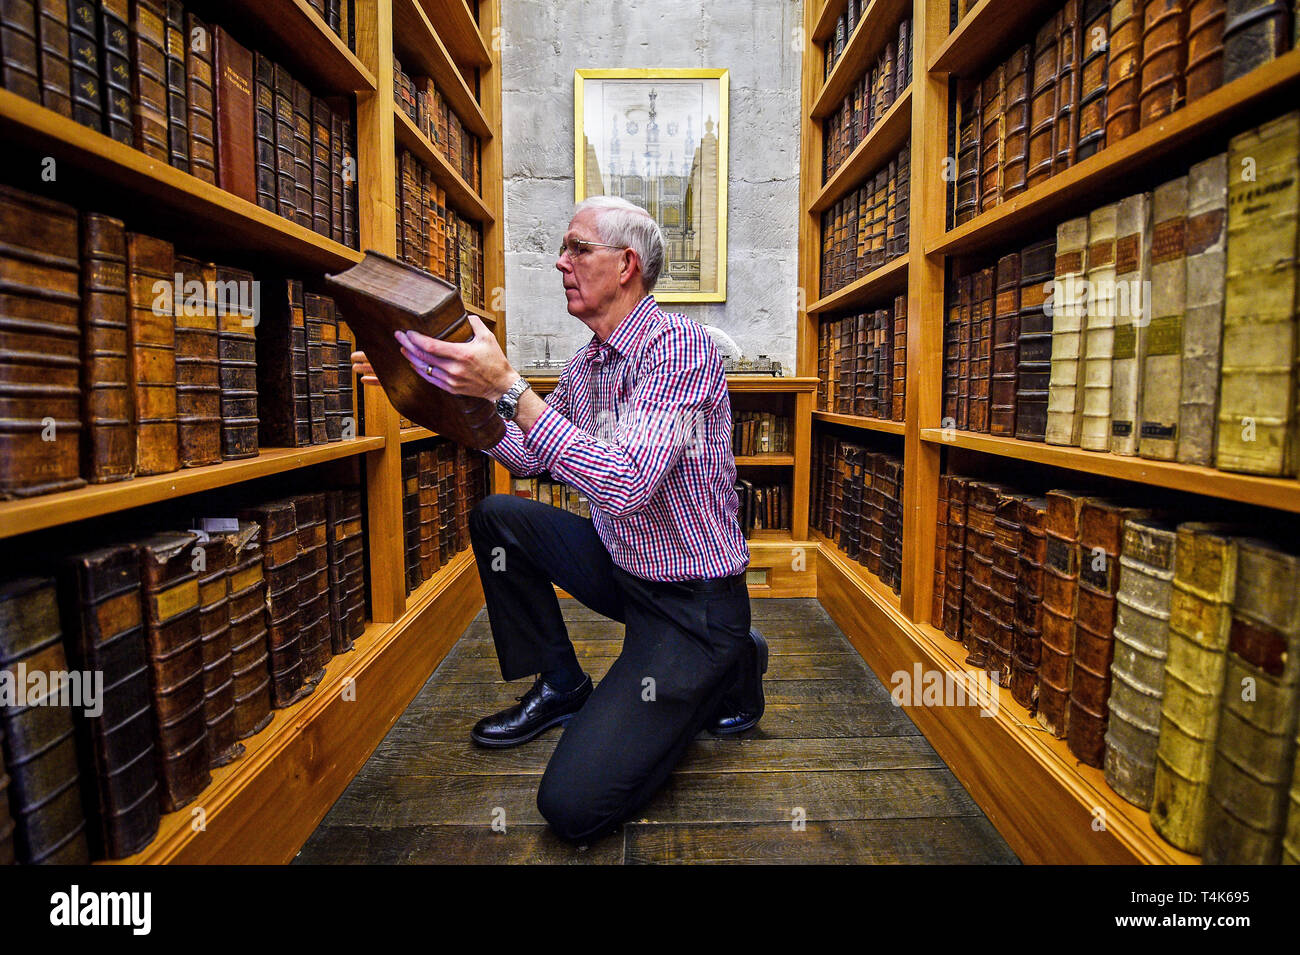 Die Kathedrale von Salisbury Archivar Colin Malcolm griffe Leder - gebundene Bücher im 15. Jahrhundert die Bibliothek der Kathedrale, wo ein Projekt zum Katalog, sauber und finden Sie mehr über die seltene Buch Sammlung ist im Gange. Stockfoto